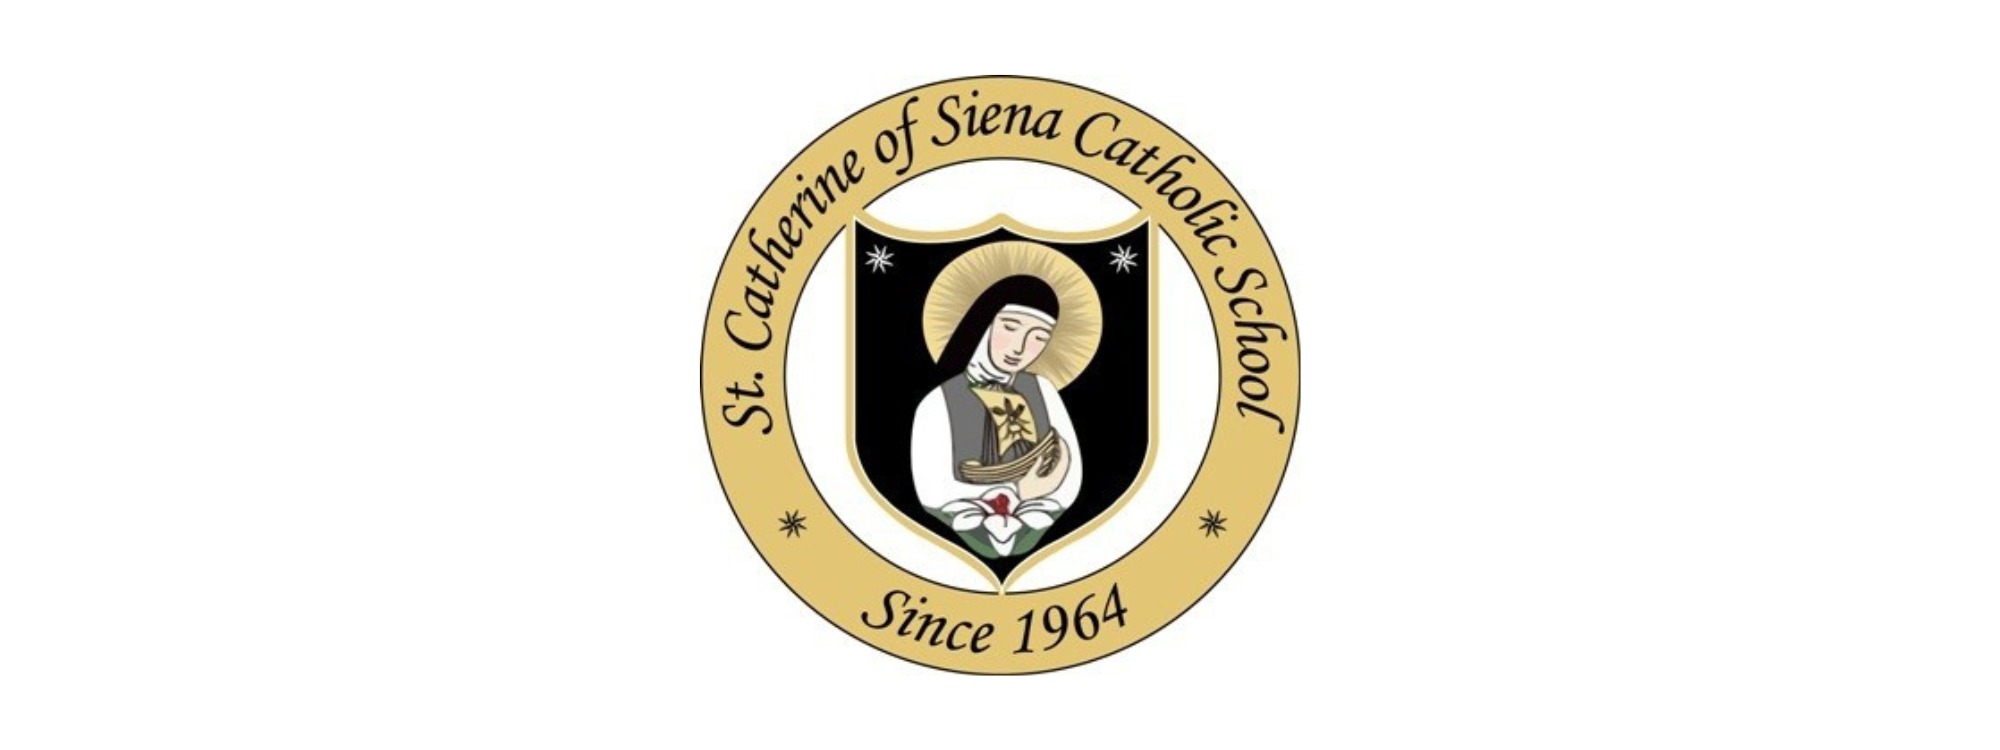 St Catheine of Siena - school logo header